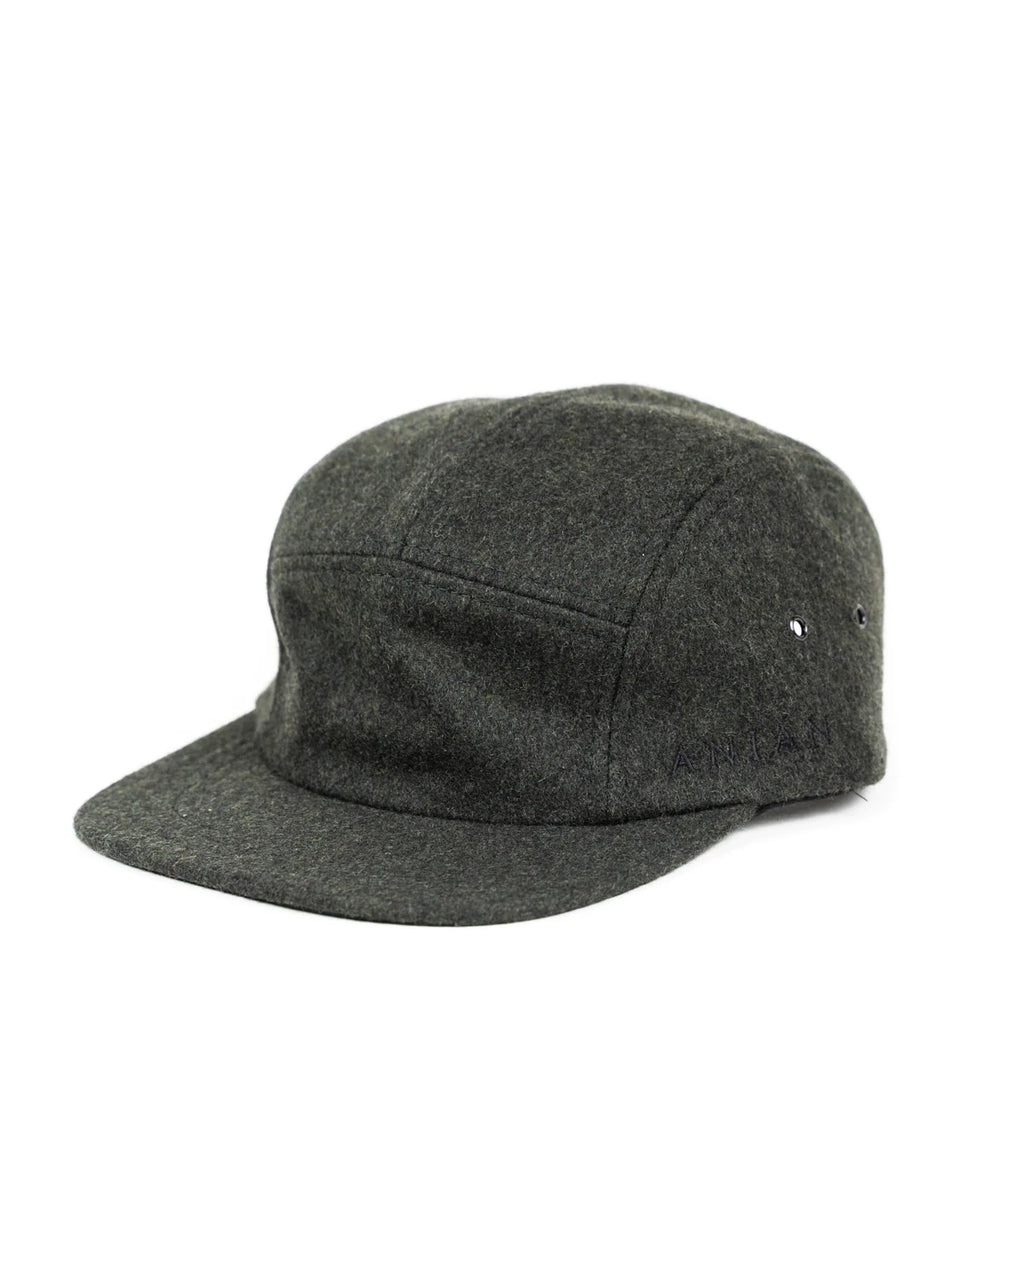 Unisex Melton Wool Hat in Olive